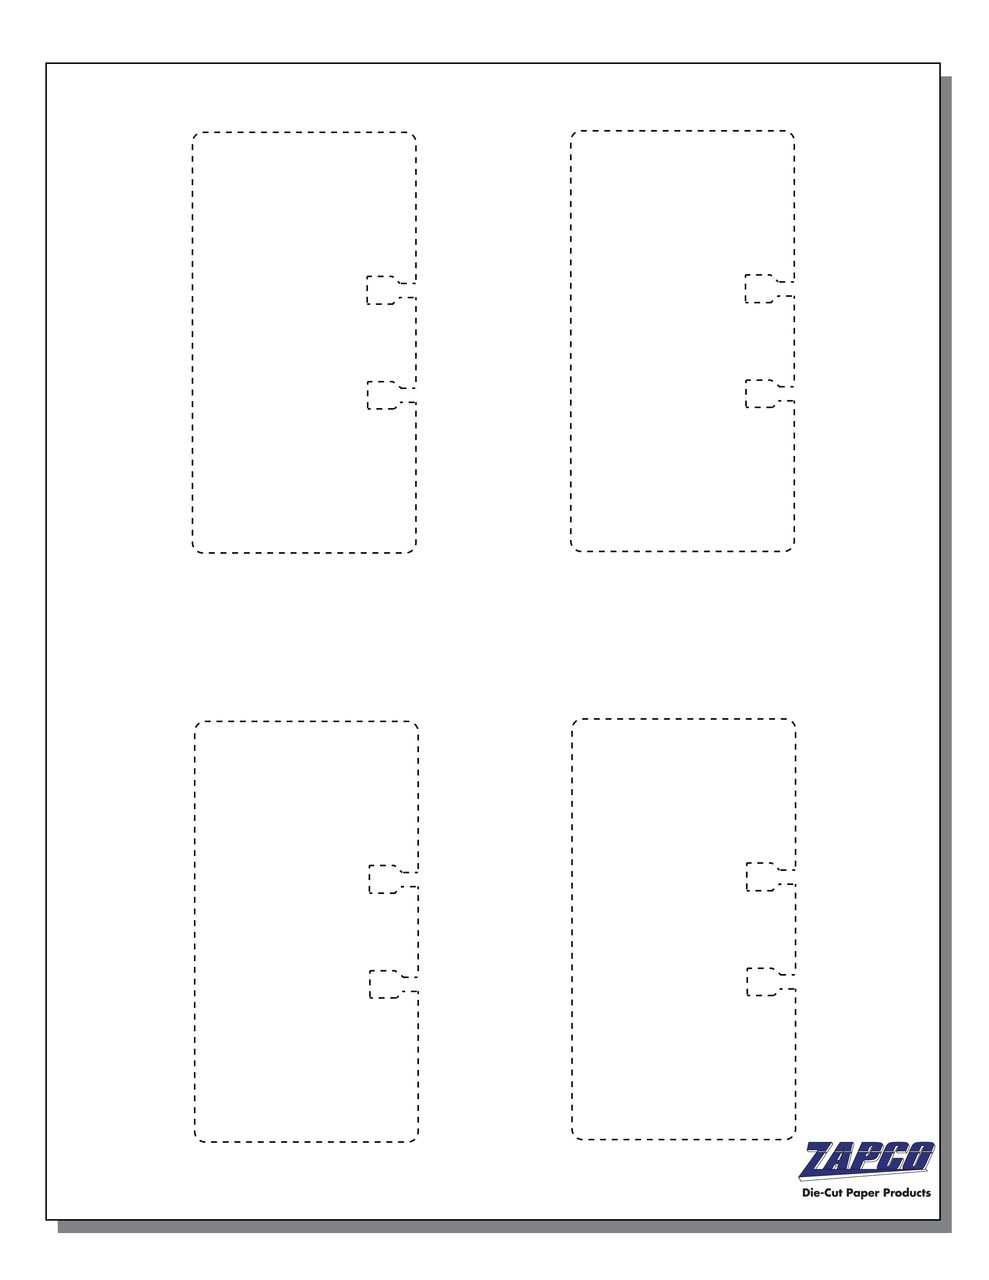 Item 125: 4-Up 2 1/8" x 4" Rotary File Card No Tab 8 1/2" x 11" Sheet(250 Sheets)